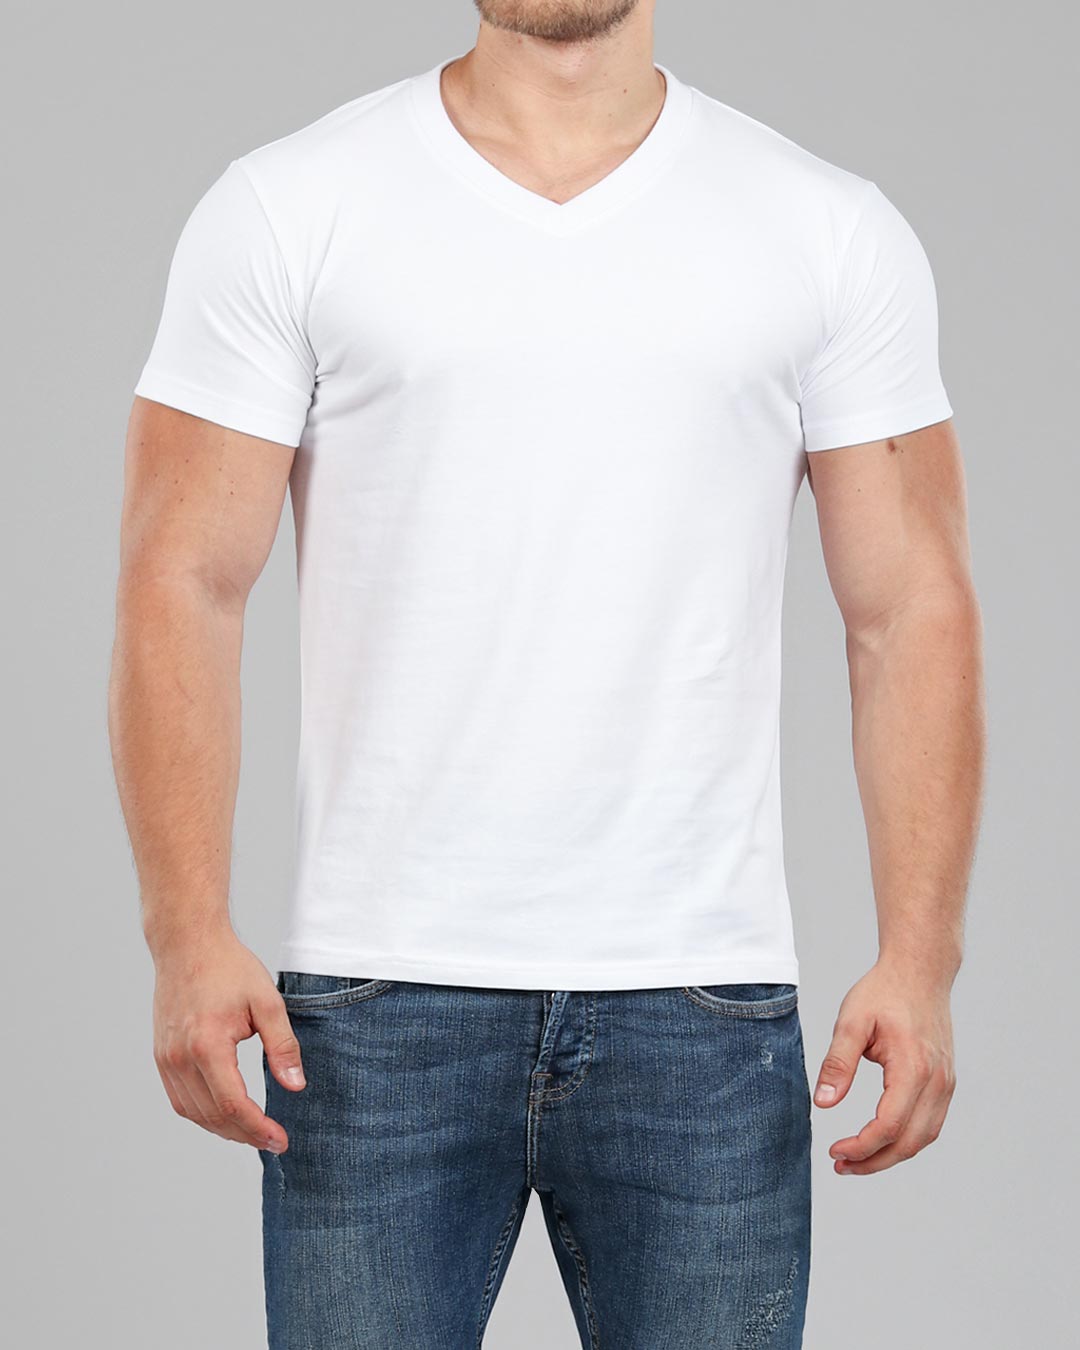 Men's V-Neck Fitted Plain T-Shirt | Fit Basics